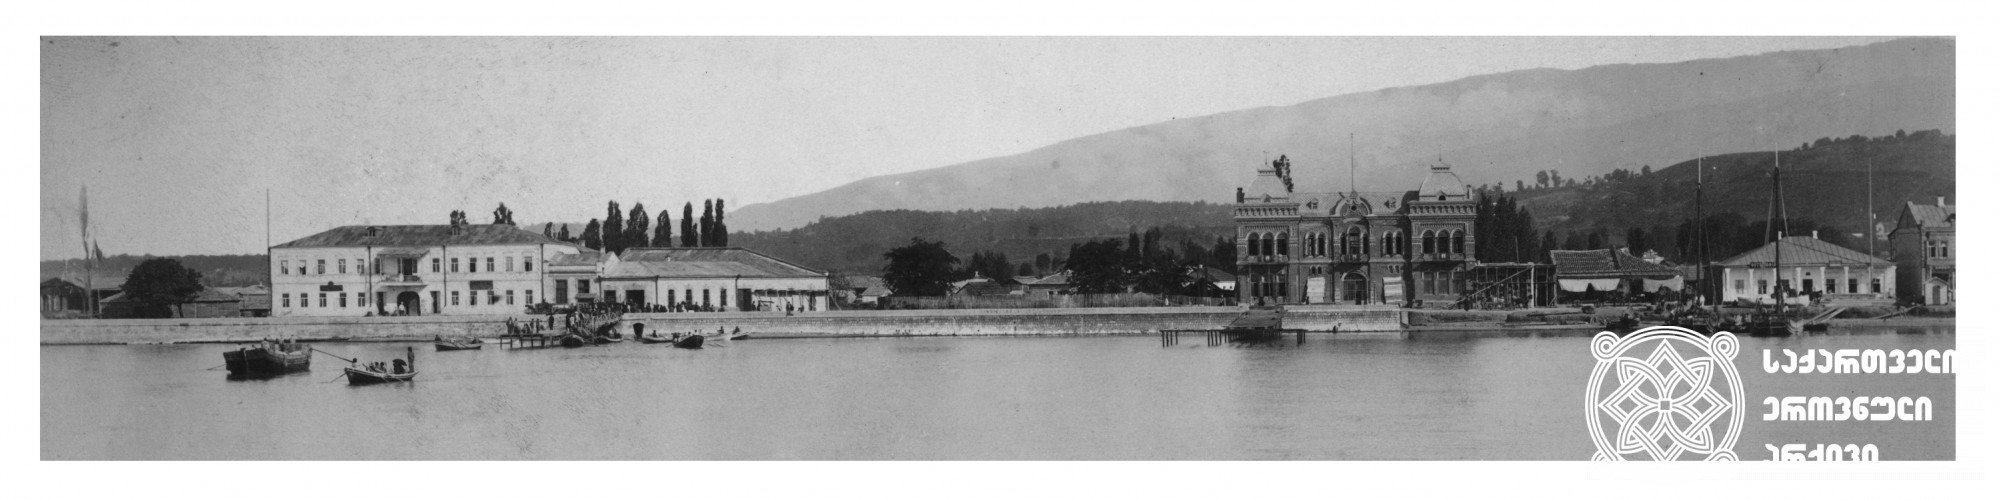 სოხუმის საერთო ხედი <br>
(1880-1900) <br>დიმიტრი ერმაკოვის ფოტოკოლექცია <br>
General view of Sokhumi <br>
(1880-1900) <br>Dimitri Ermakov's photo collection